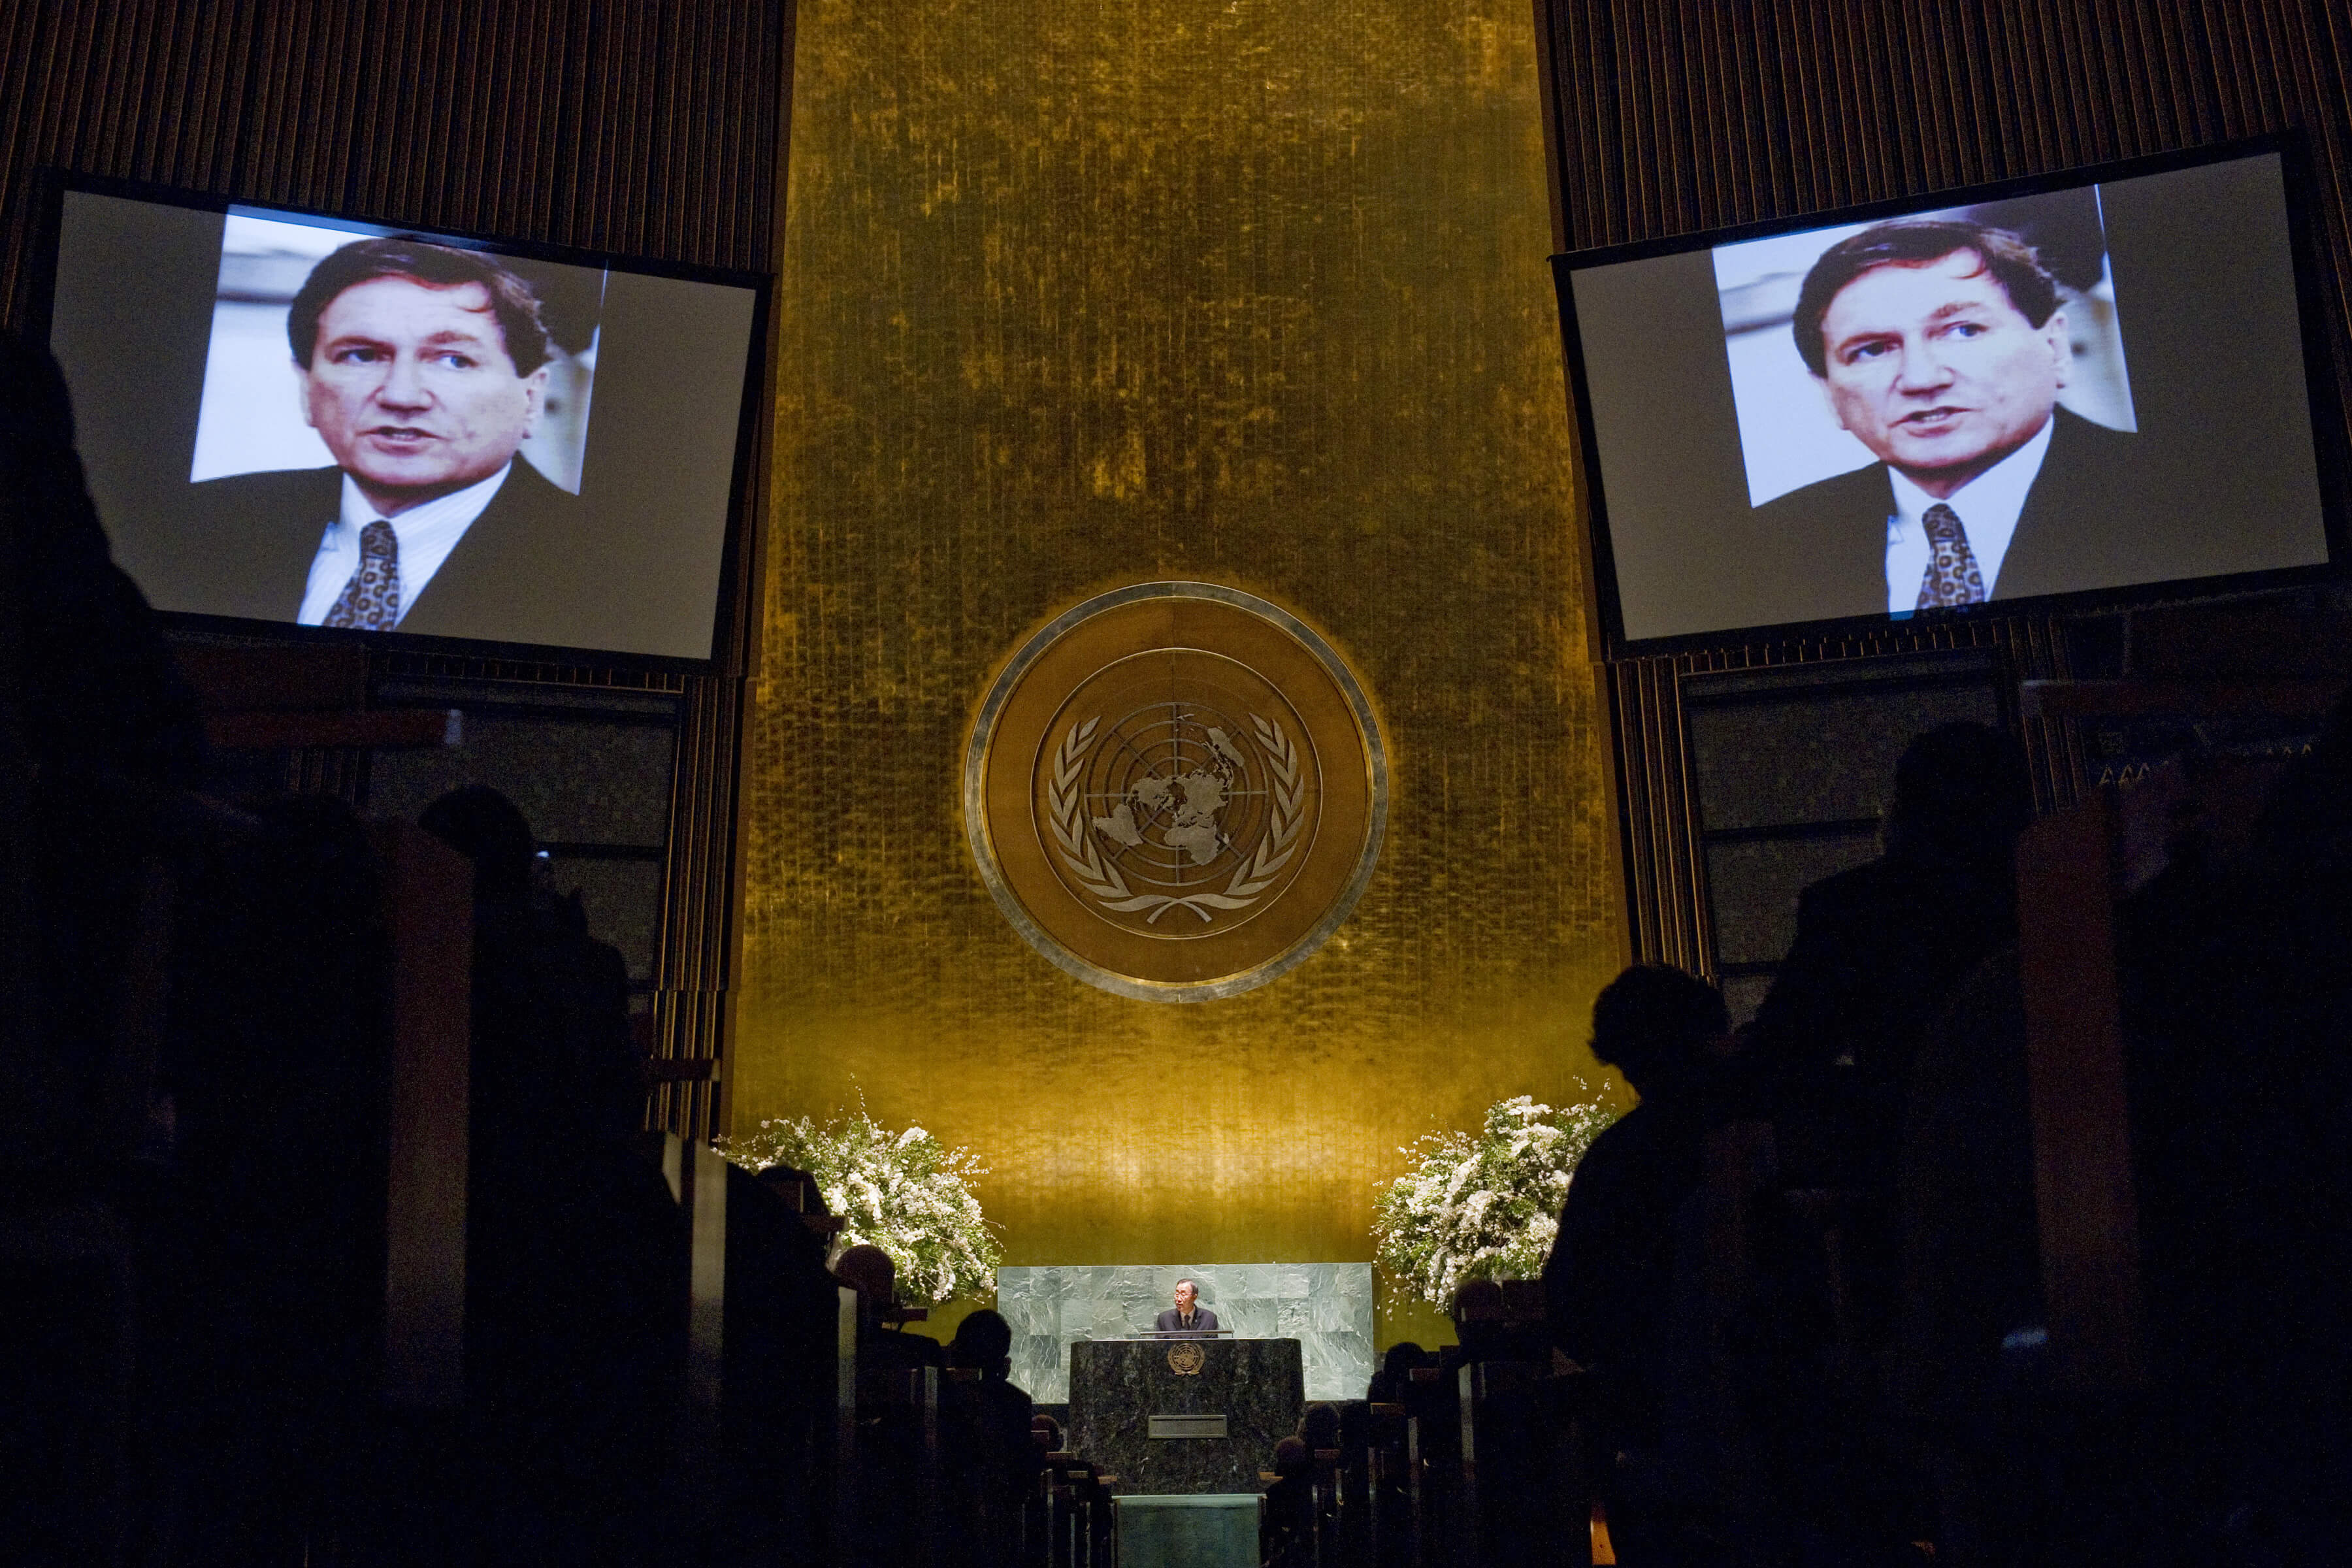 De gedenking van Richard Holbrooke in de vergaderzaal van de Algemene Vergadering van de VN, New York. © United Nations Photo/Flickr